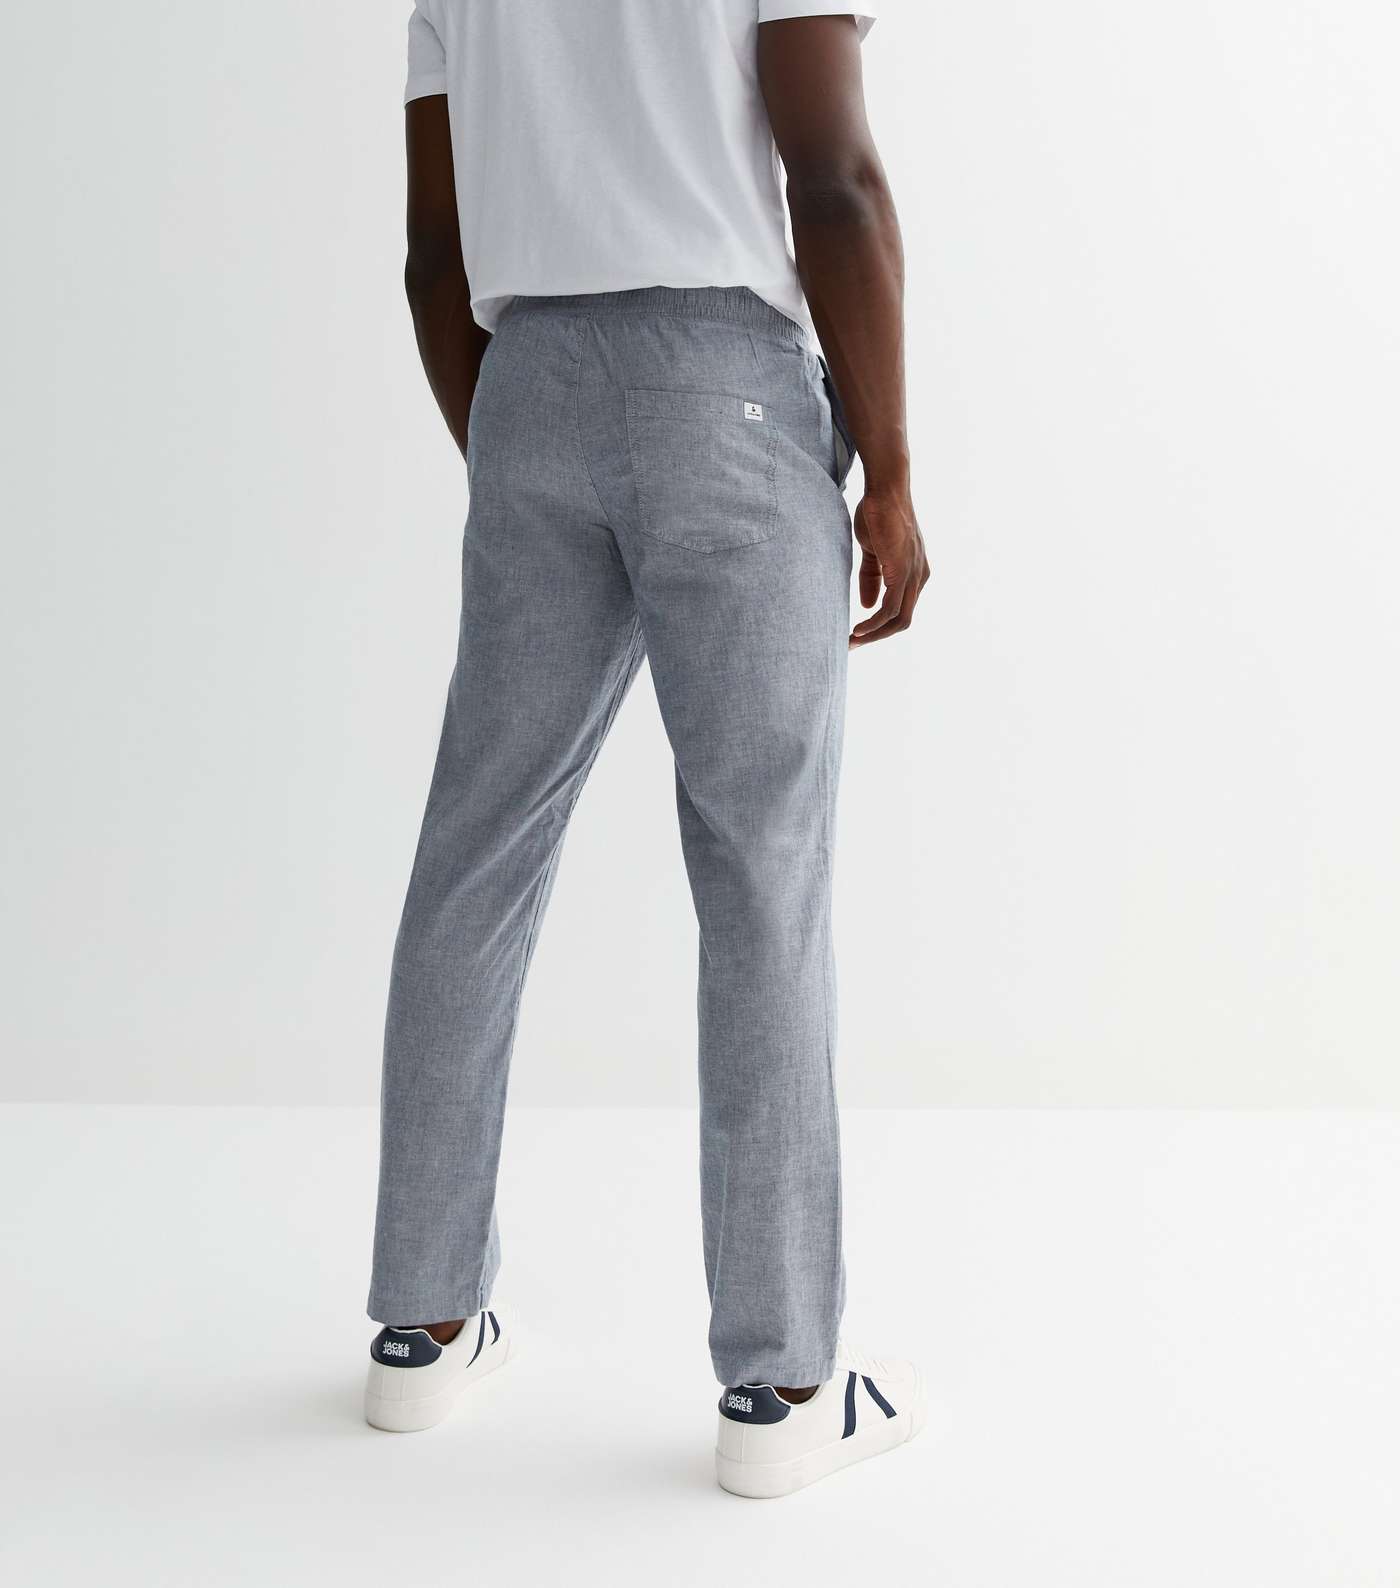 Jack & Jones Grey Linen-Look Trousers Image 4